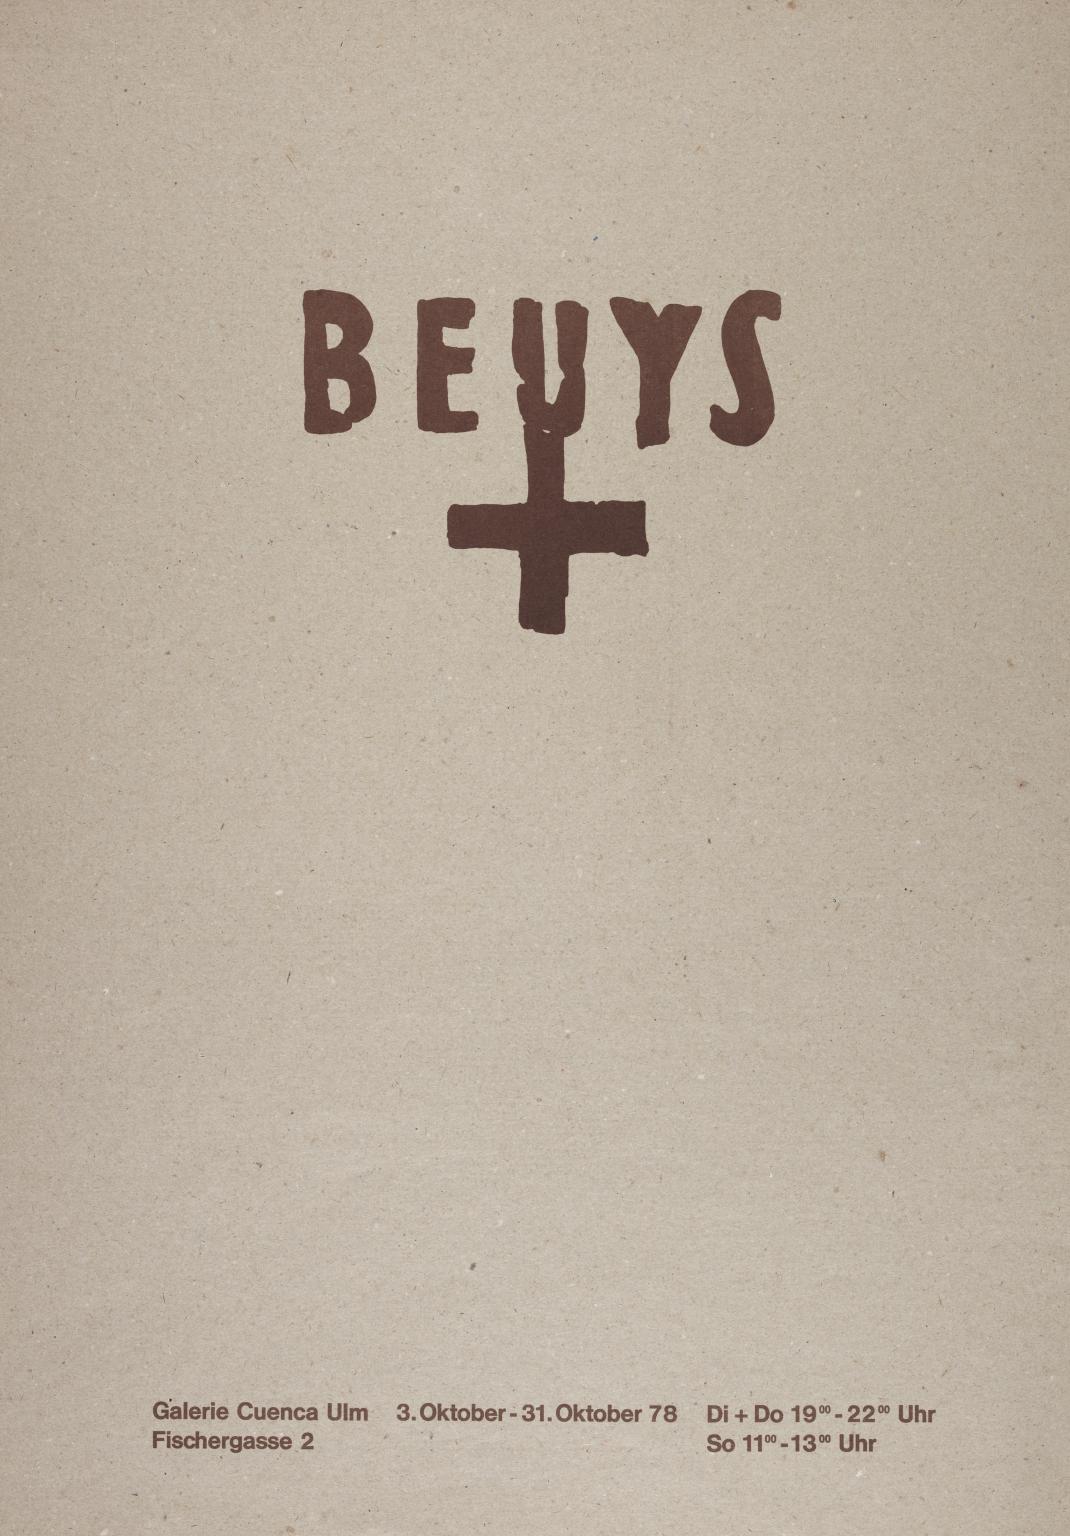 Beuys', Joseph Beuys, 1978 | Tate